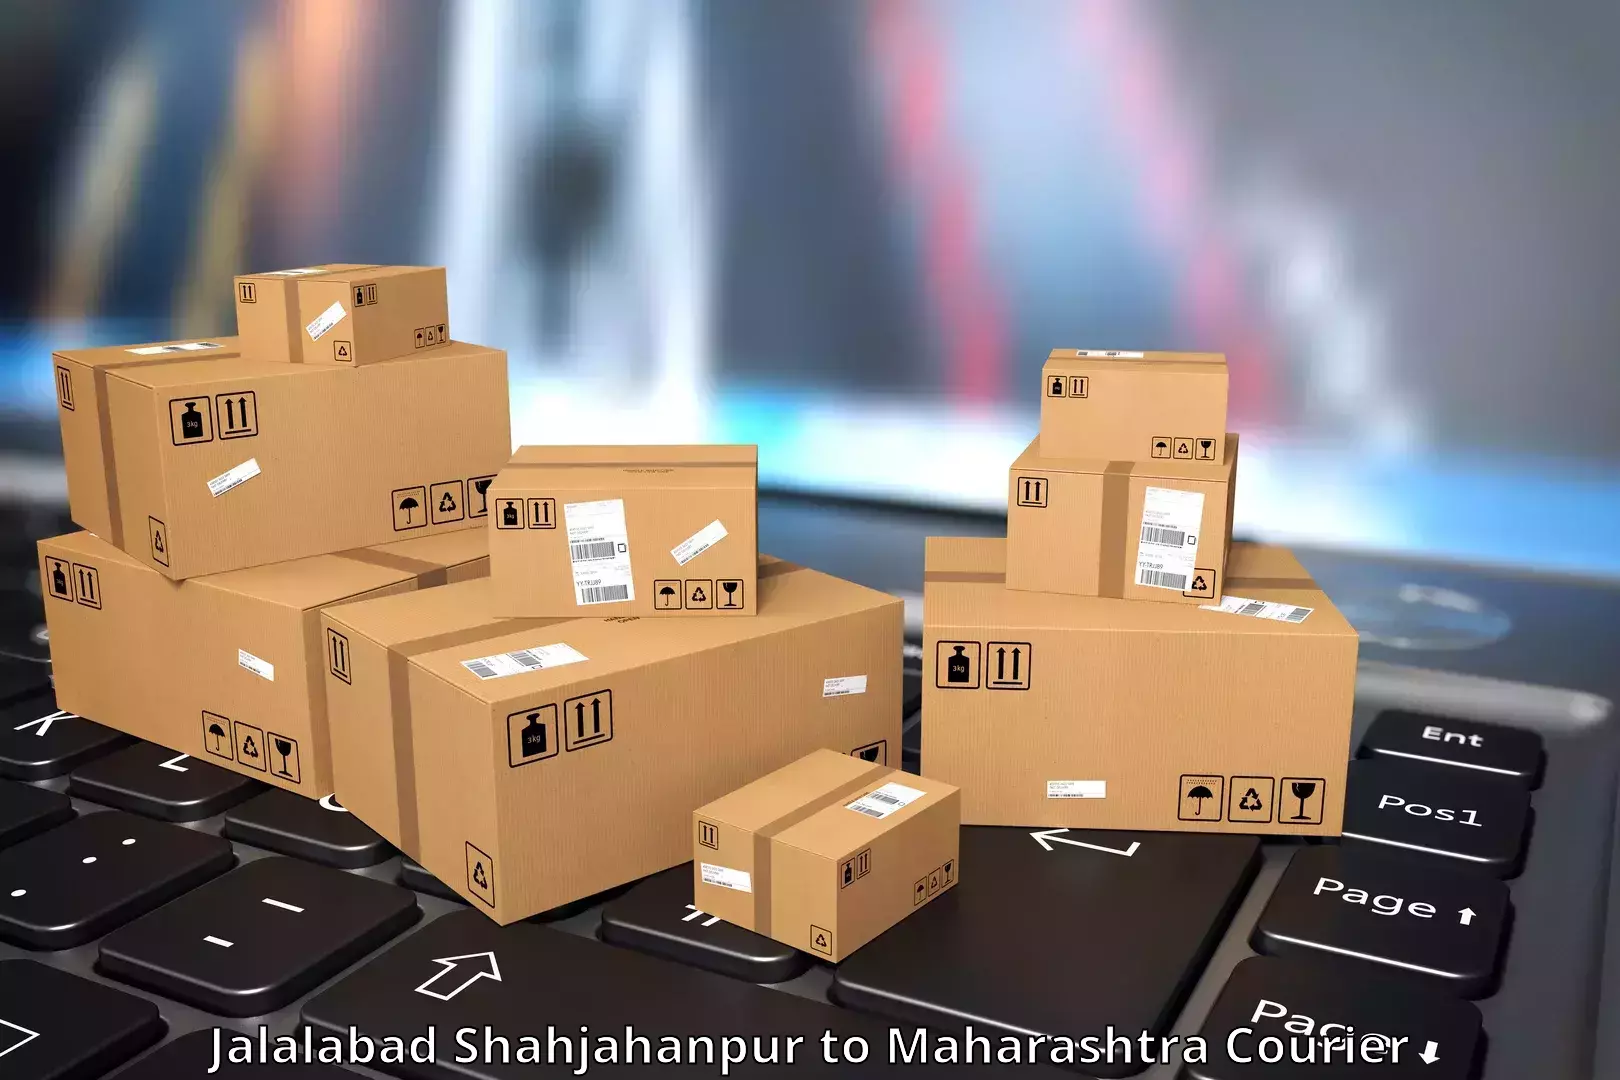 Customer-centric shipping Jalalabad Shahjahanpur to Soegaon